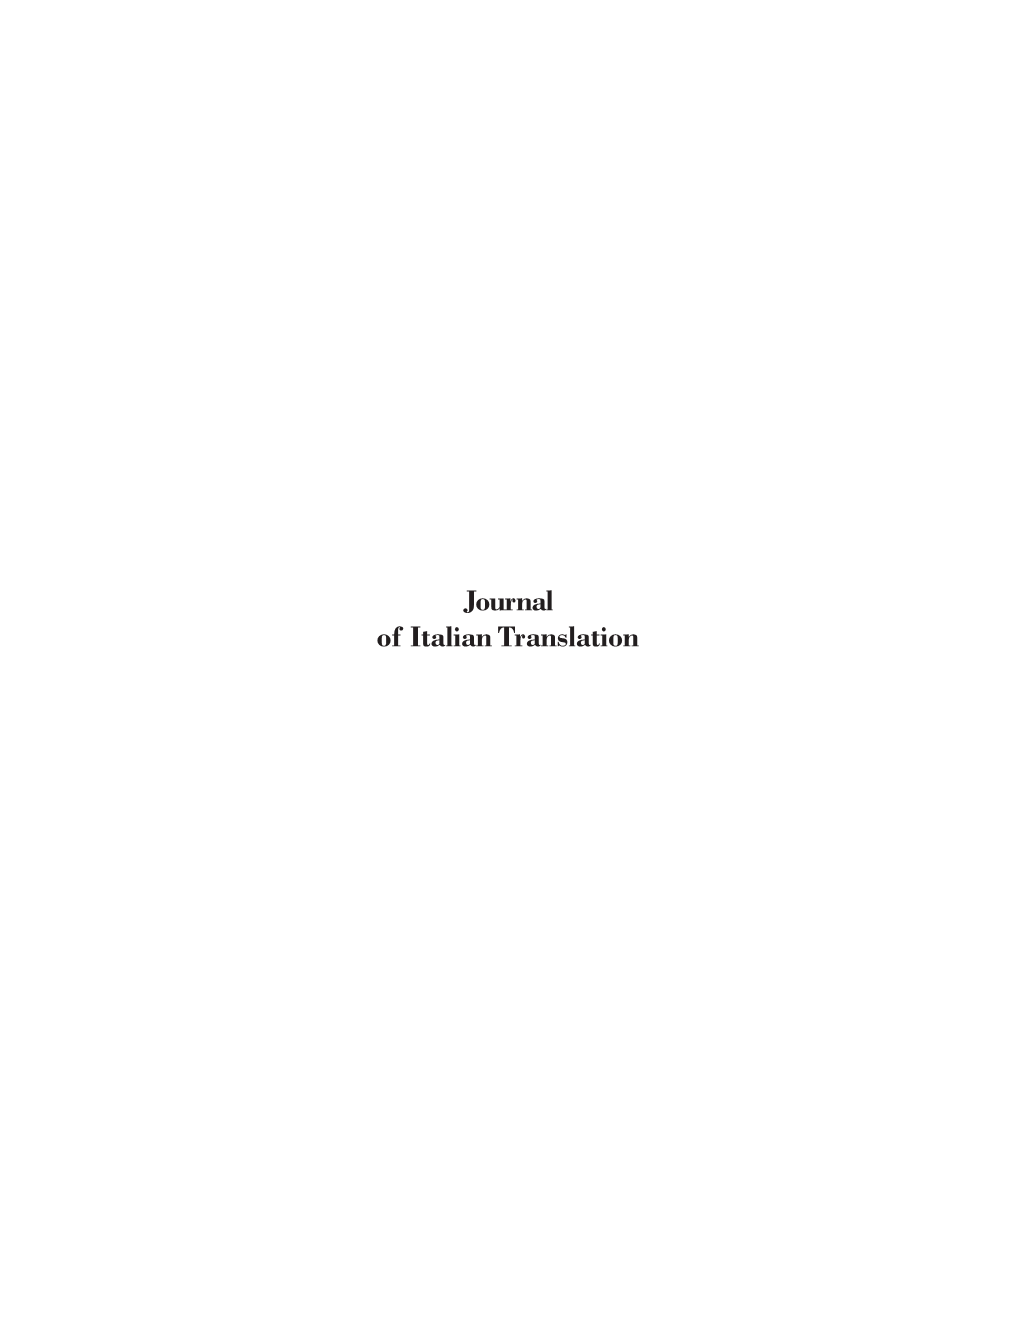 Journal of Italian Translation Editor Luigi Bonaffini